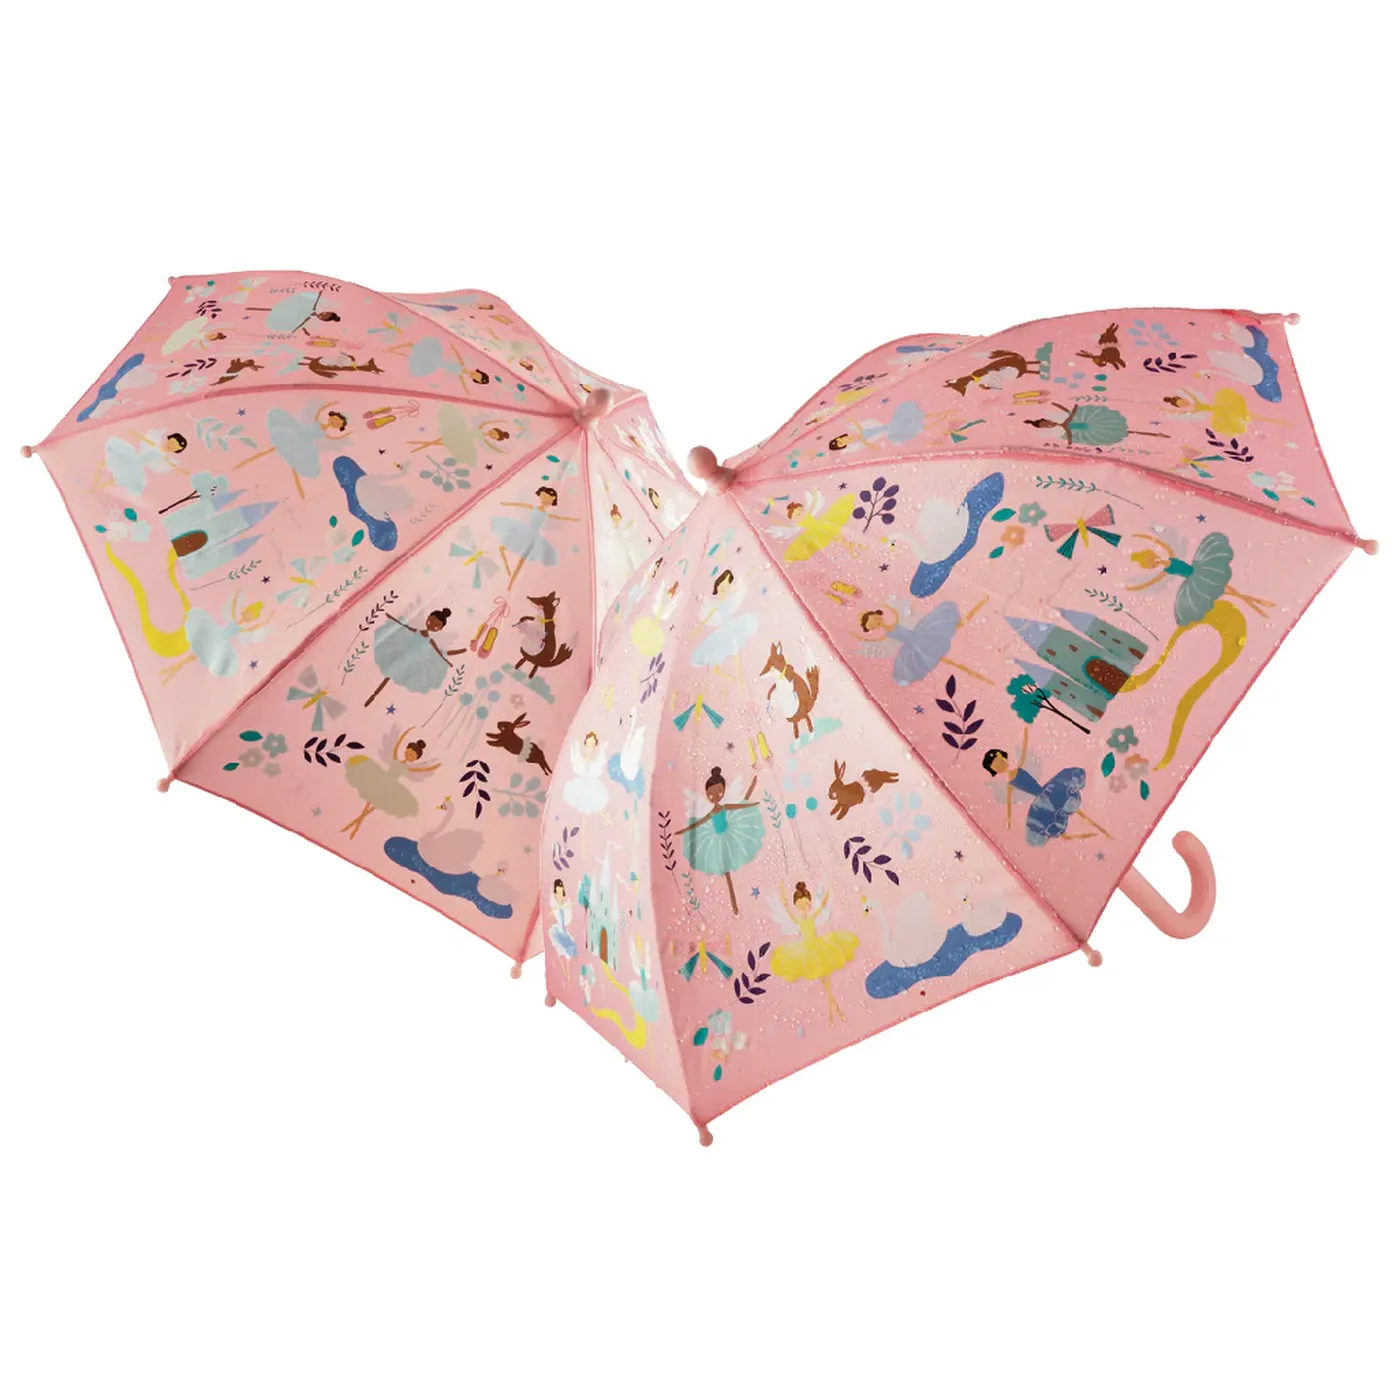 Umbrela pentru copii, in culori schimbatoare Enchanted, 3 ani+, Floss & Rock